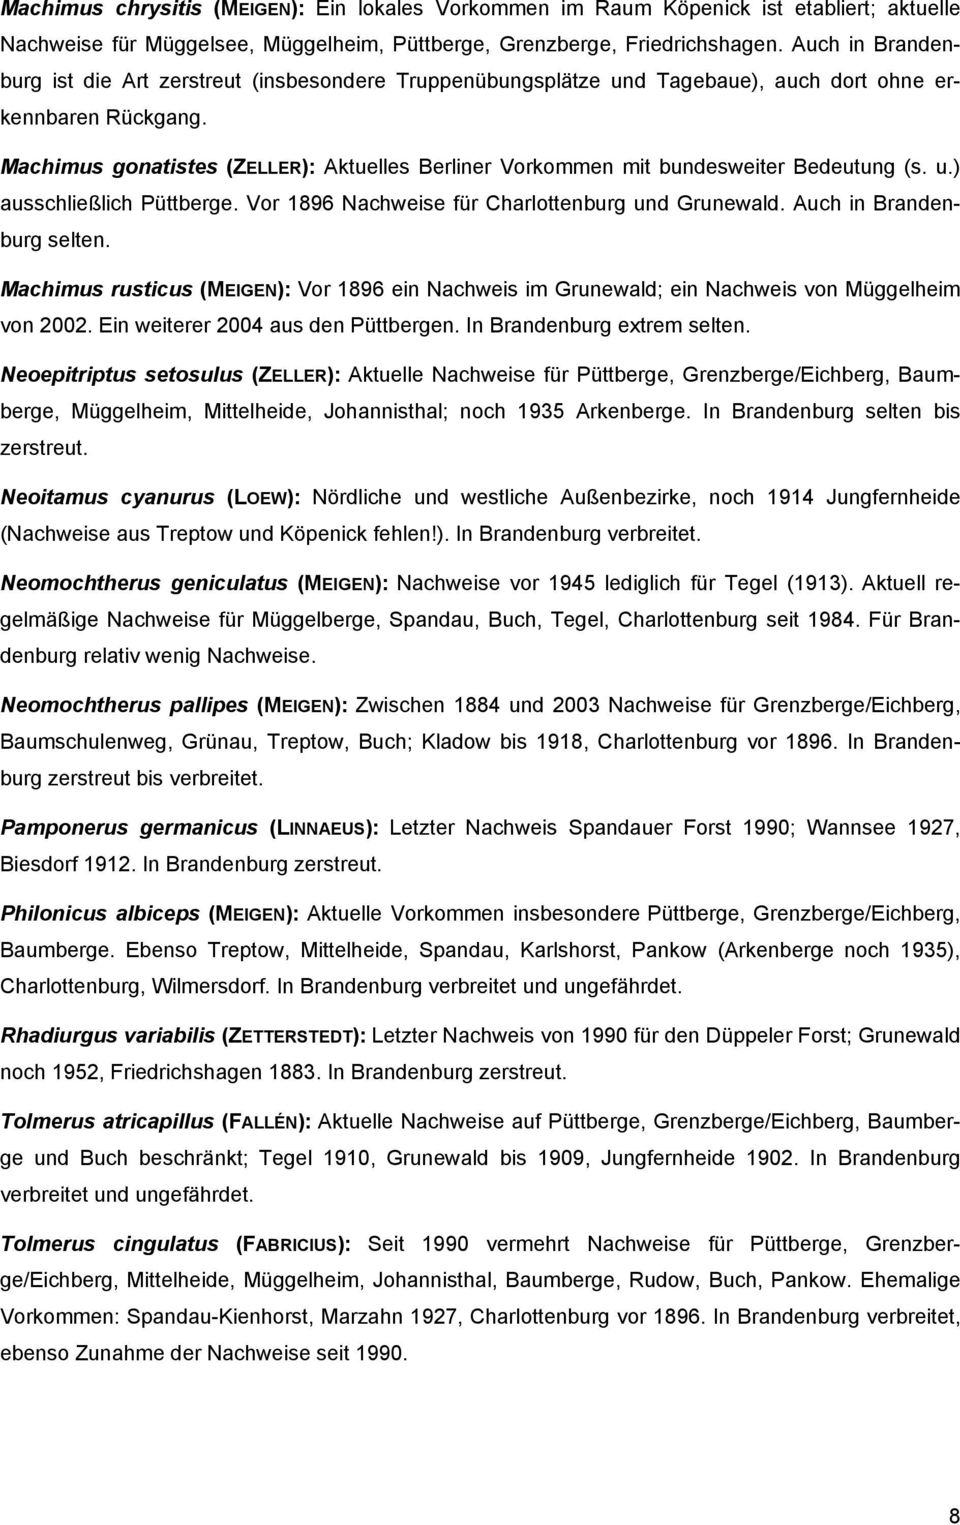 Machimus gonatistes (ZELLER): Aktuelles Berliner Vorkommen mit bundesweiter Bedeutung (s. u.) ausschließlich Püttberge. Vor 1896 Nachweise für Charlottenburg und Grunewald. Auch in Brandenburg selten.